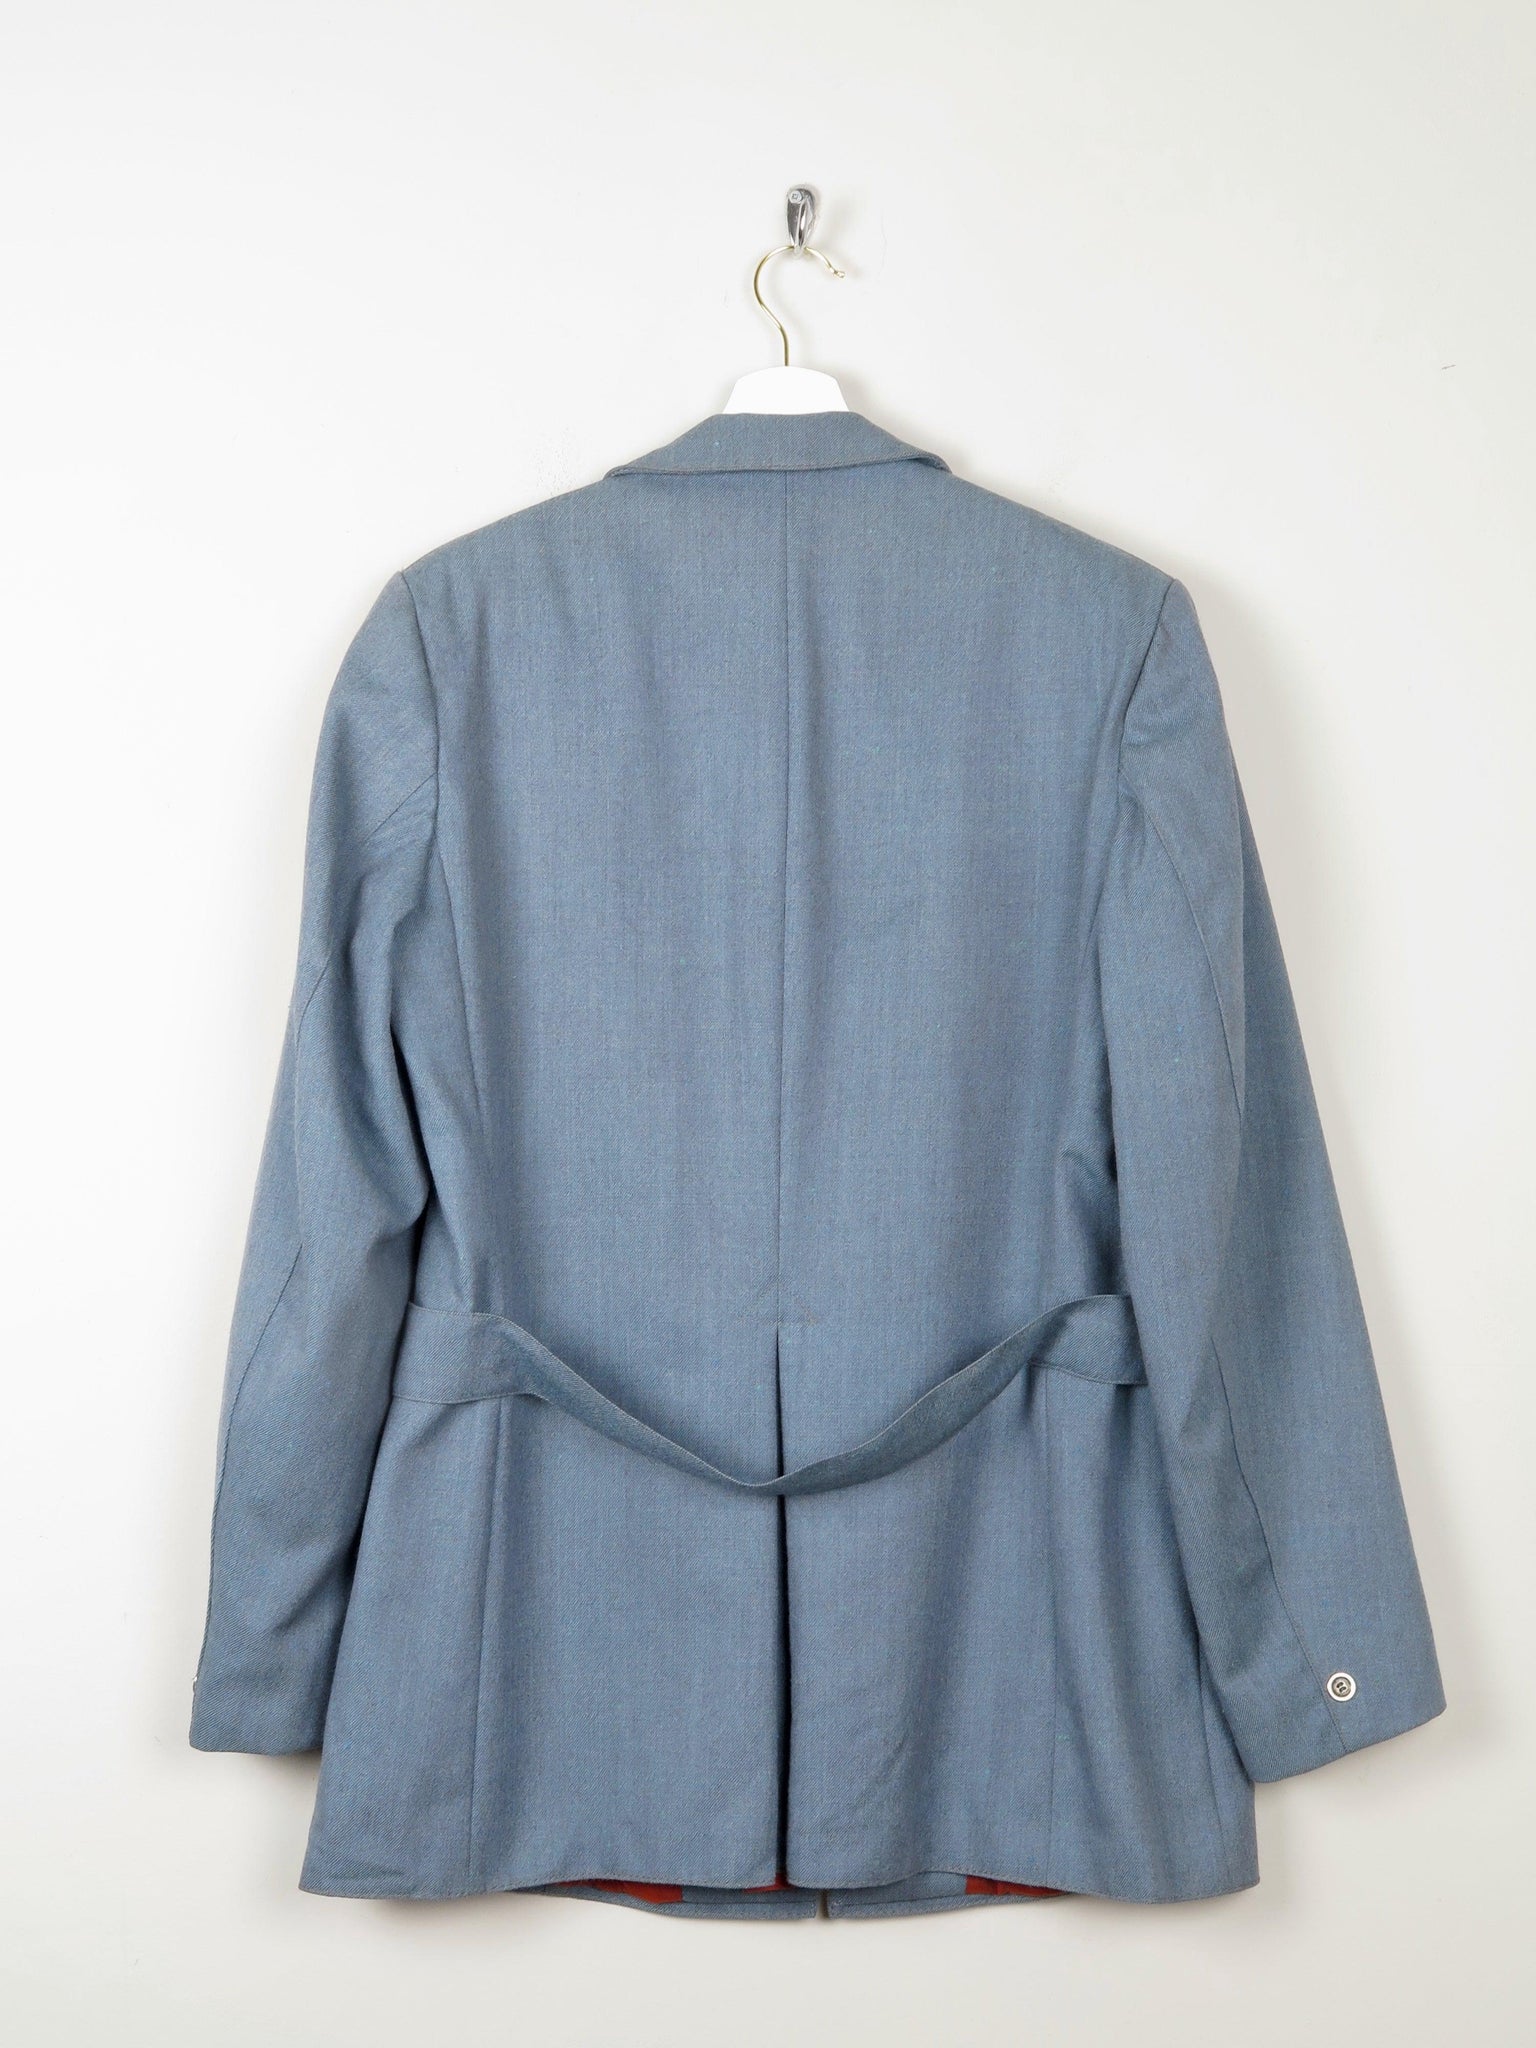 Men's 1960s Vintage Blue Jacket 40"S/M - The Harlequin